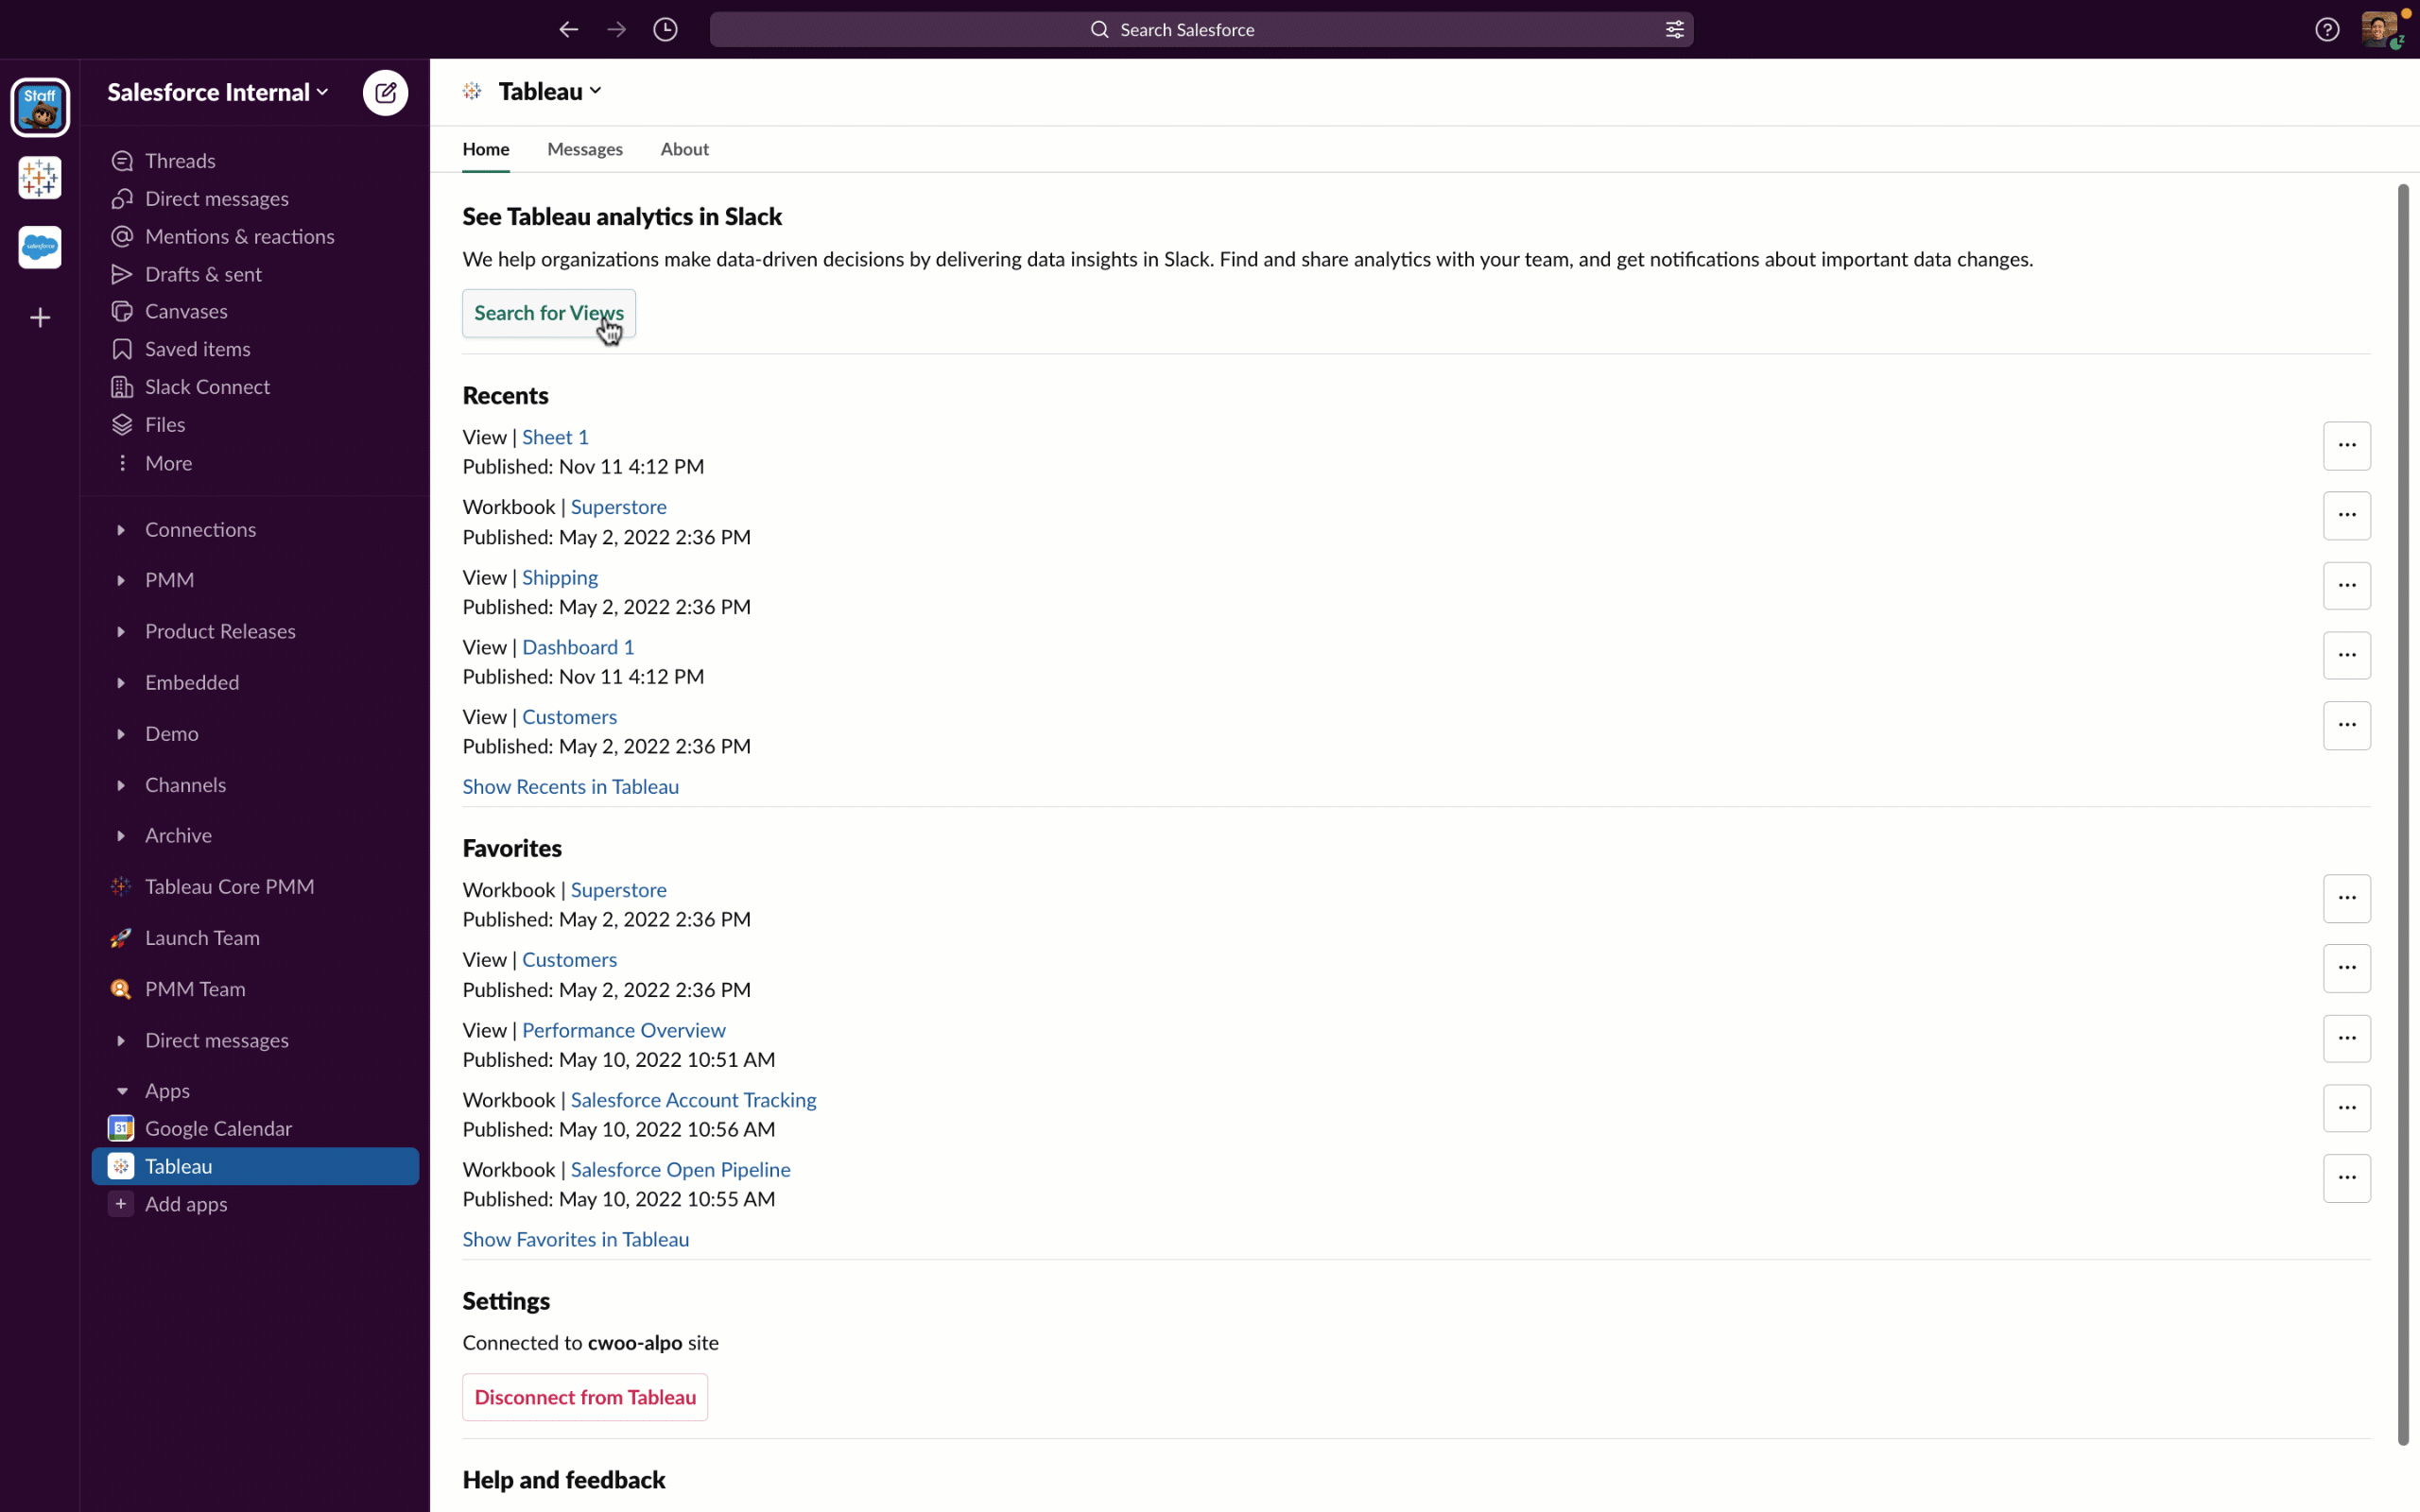 El usuario busca vistas en los libros de trabajo de Tableau en la aplicación de Tableau para Slack y comparte libros de trabajo con otros usuarios